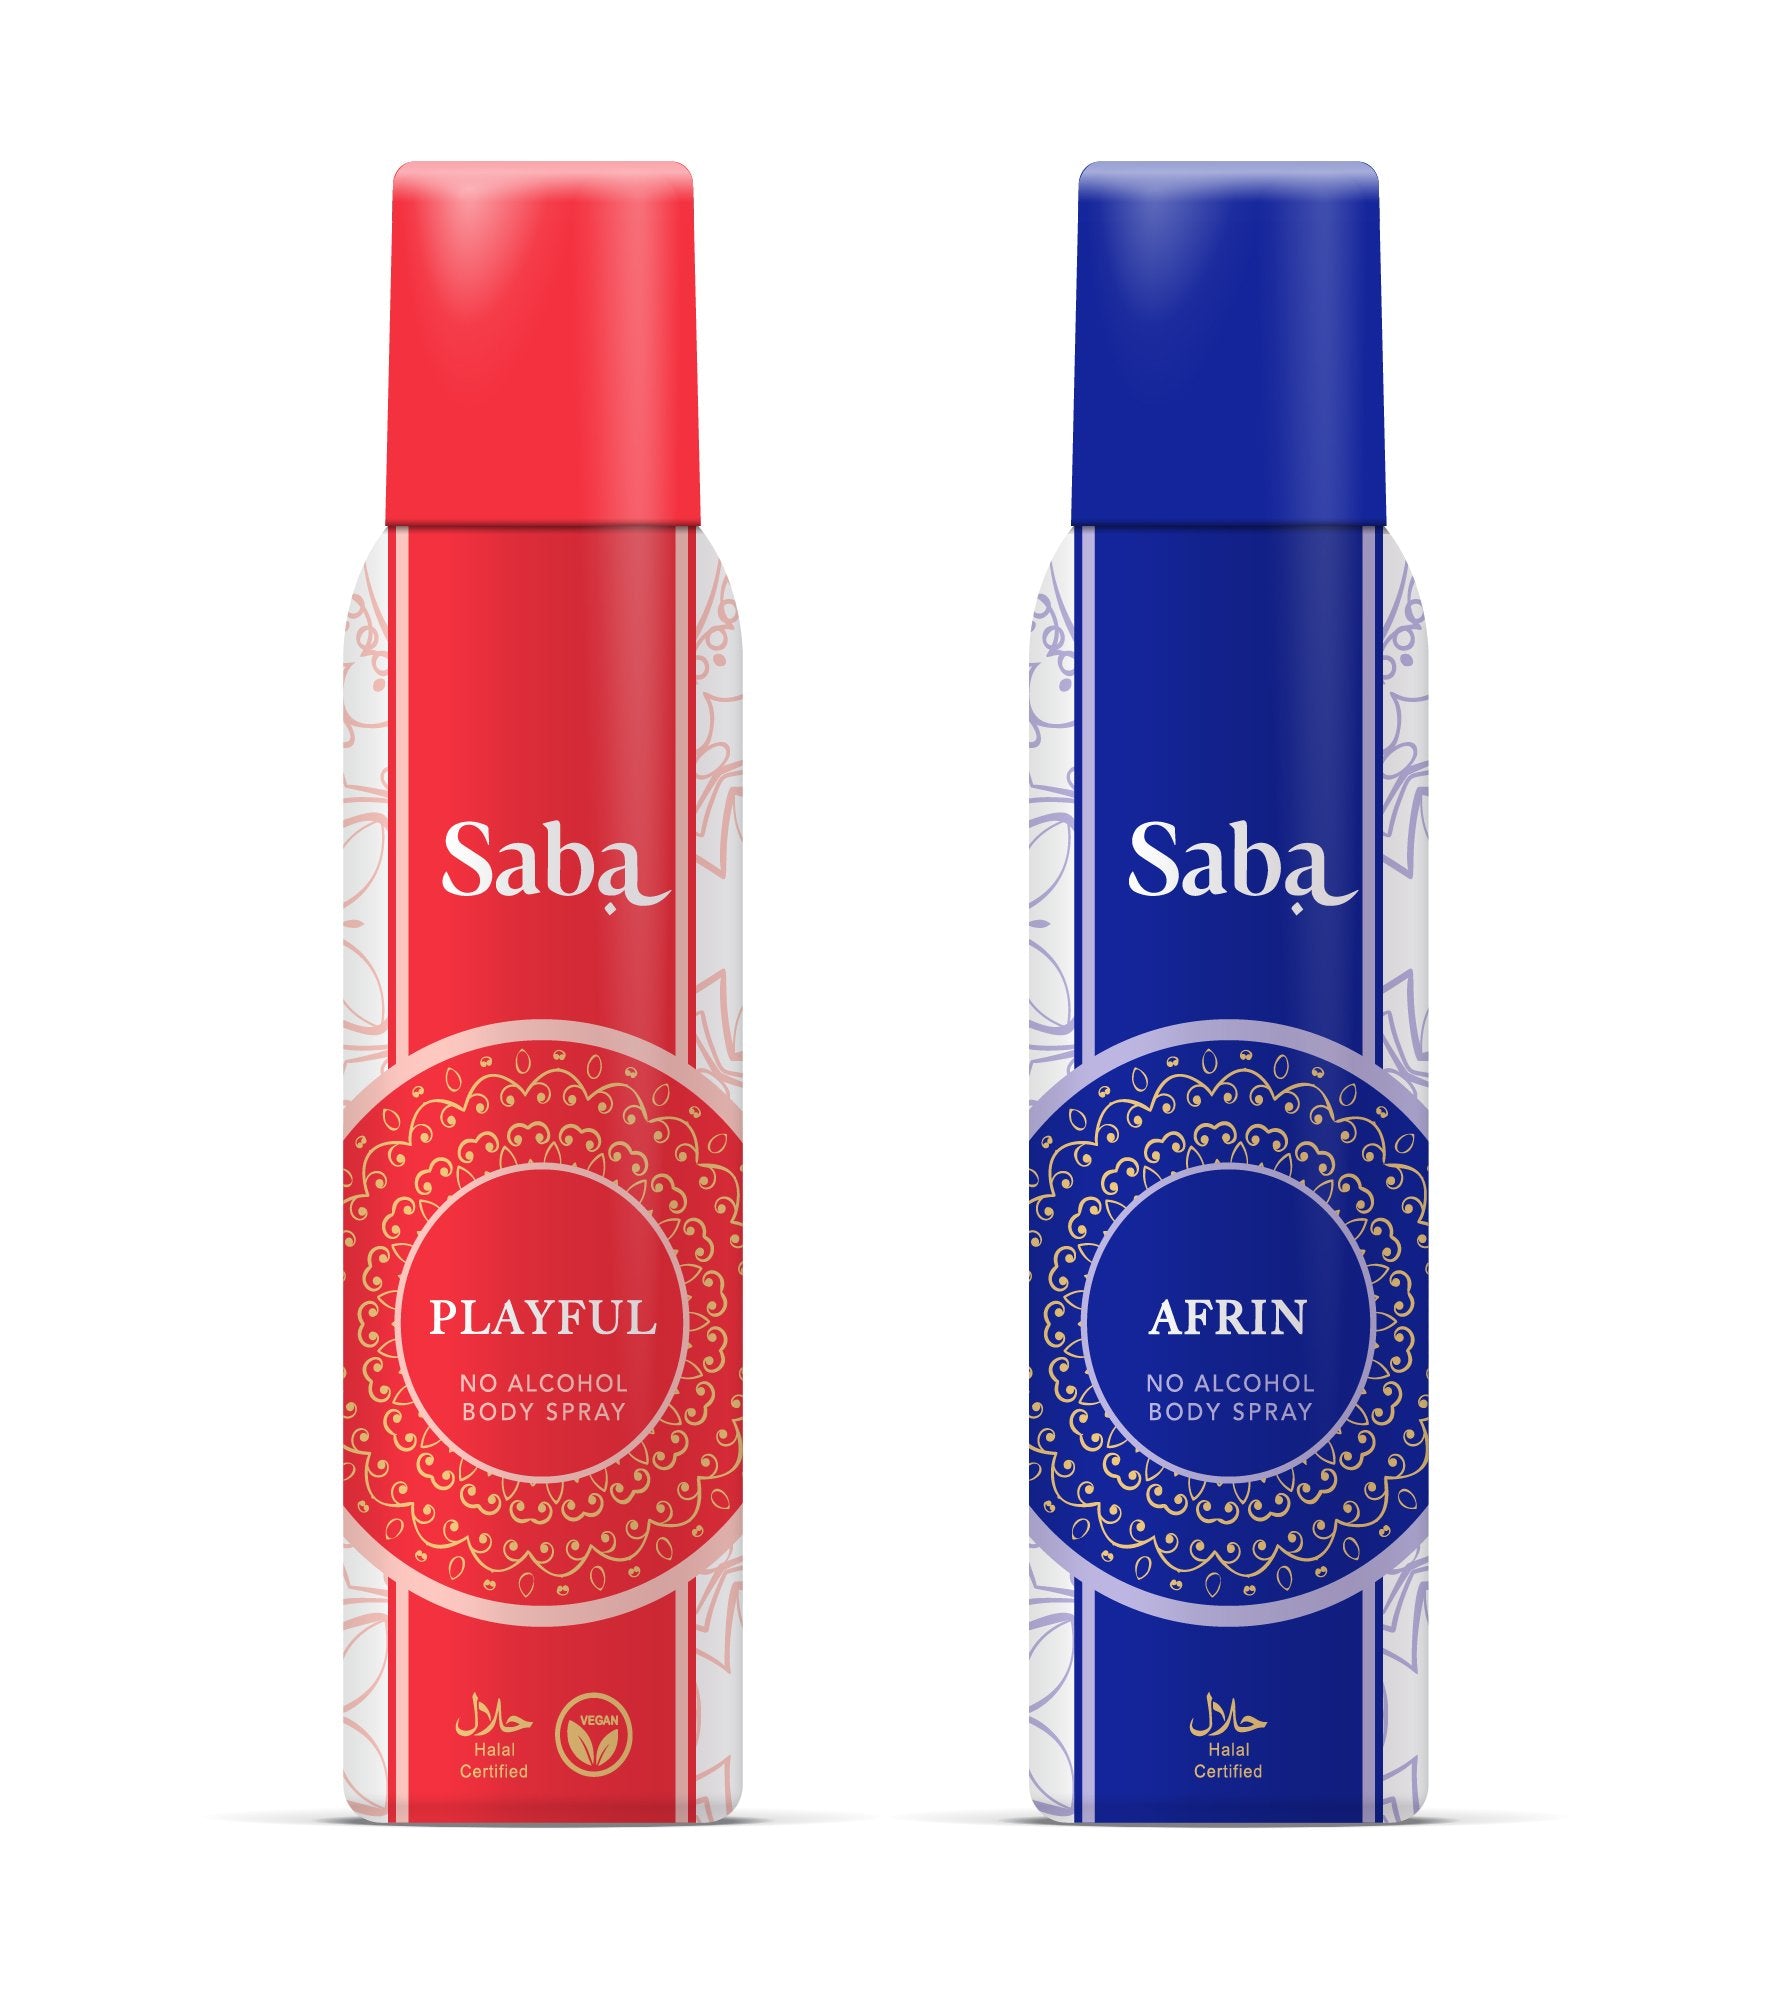 Combo Saba Afrin & Saba Playful with Saba Moisturizing Facewash Free